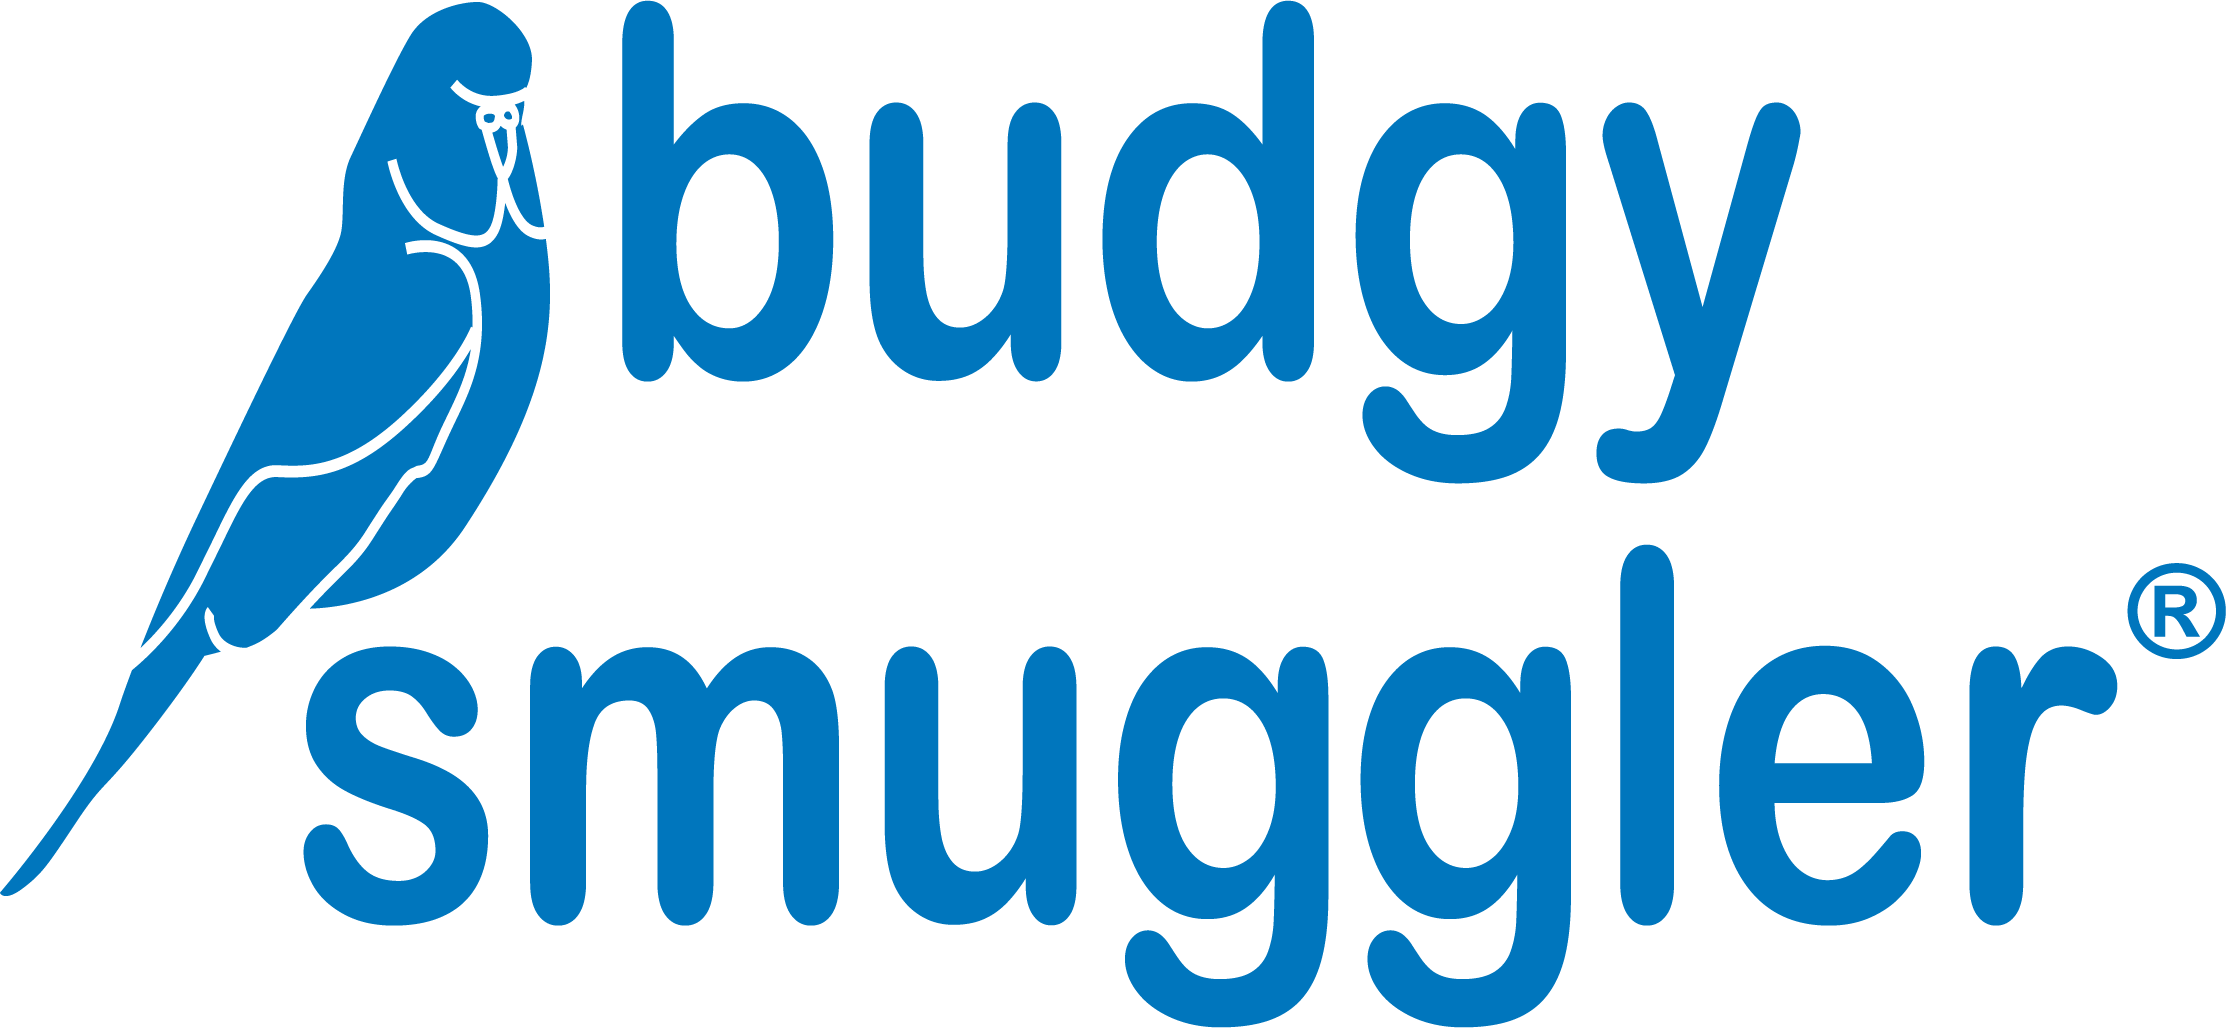 Budgy Smuggler France